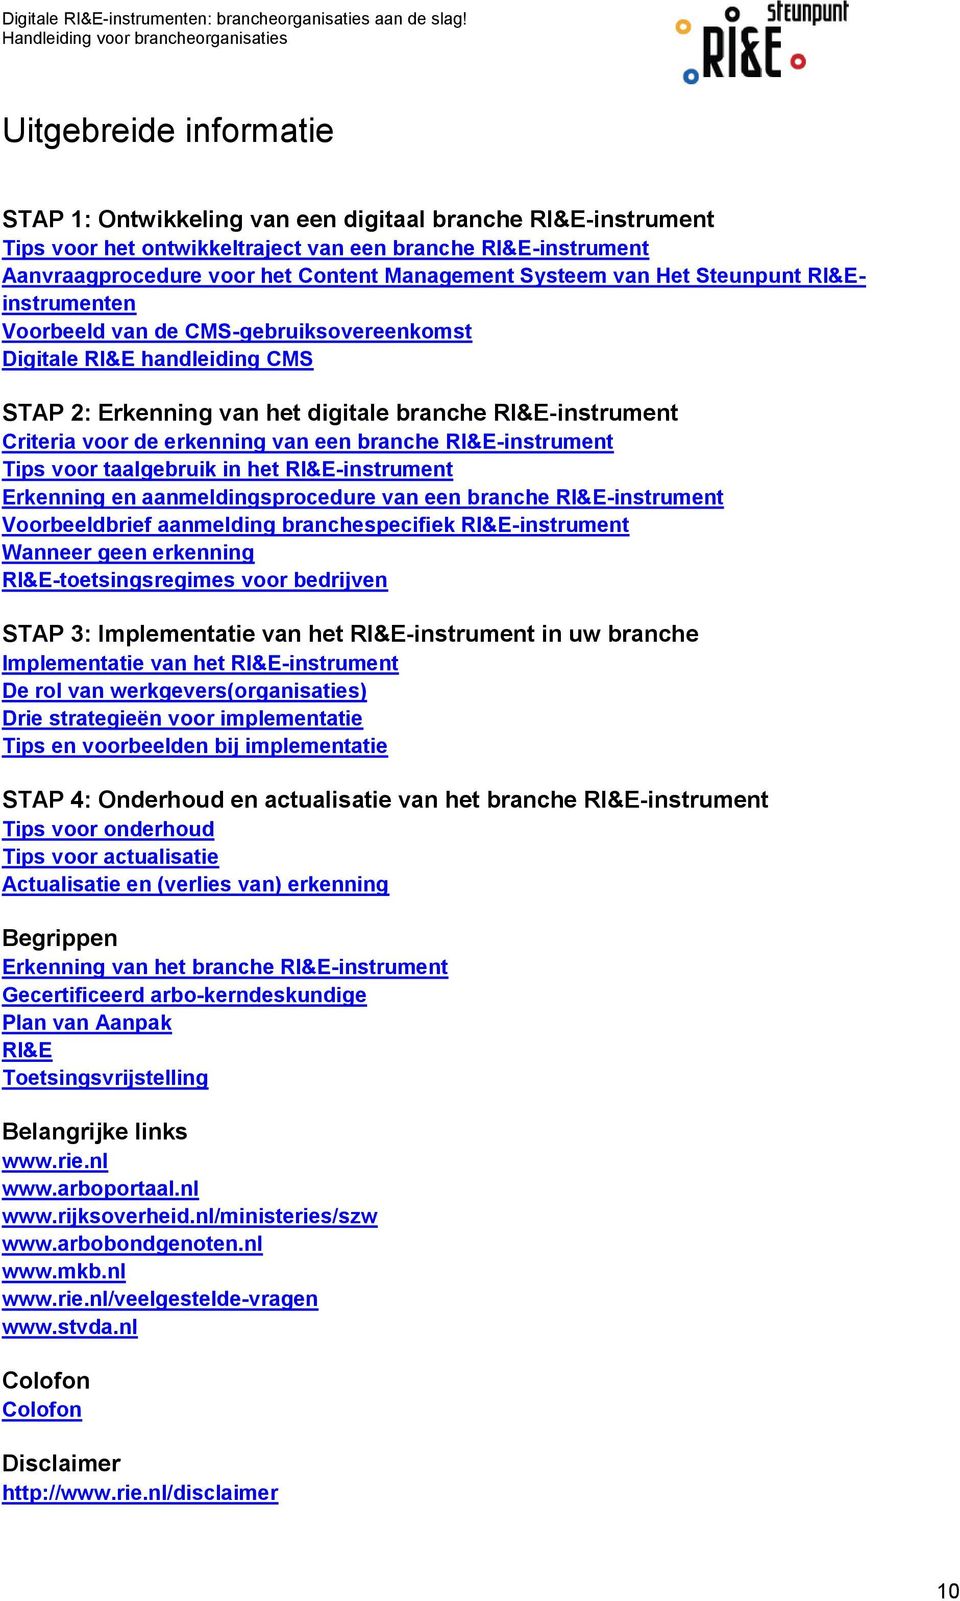 erkenning van een branche RI&E-instrument Tips voor taalgebruik in het RI&E-instrument Erkenning en aanmeldingsprocedure van een branche RI&E-instrument Voorbeeldbrief aanmelding branchespecifiek